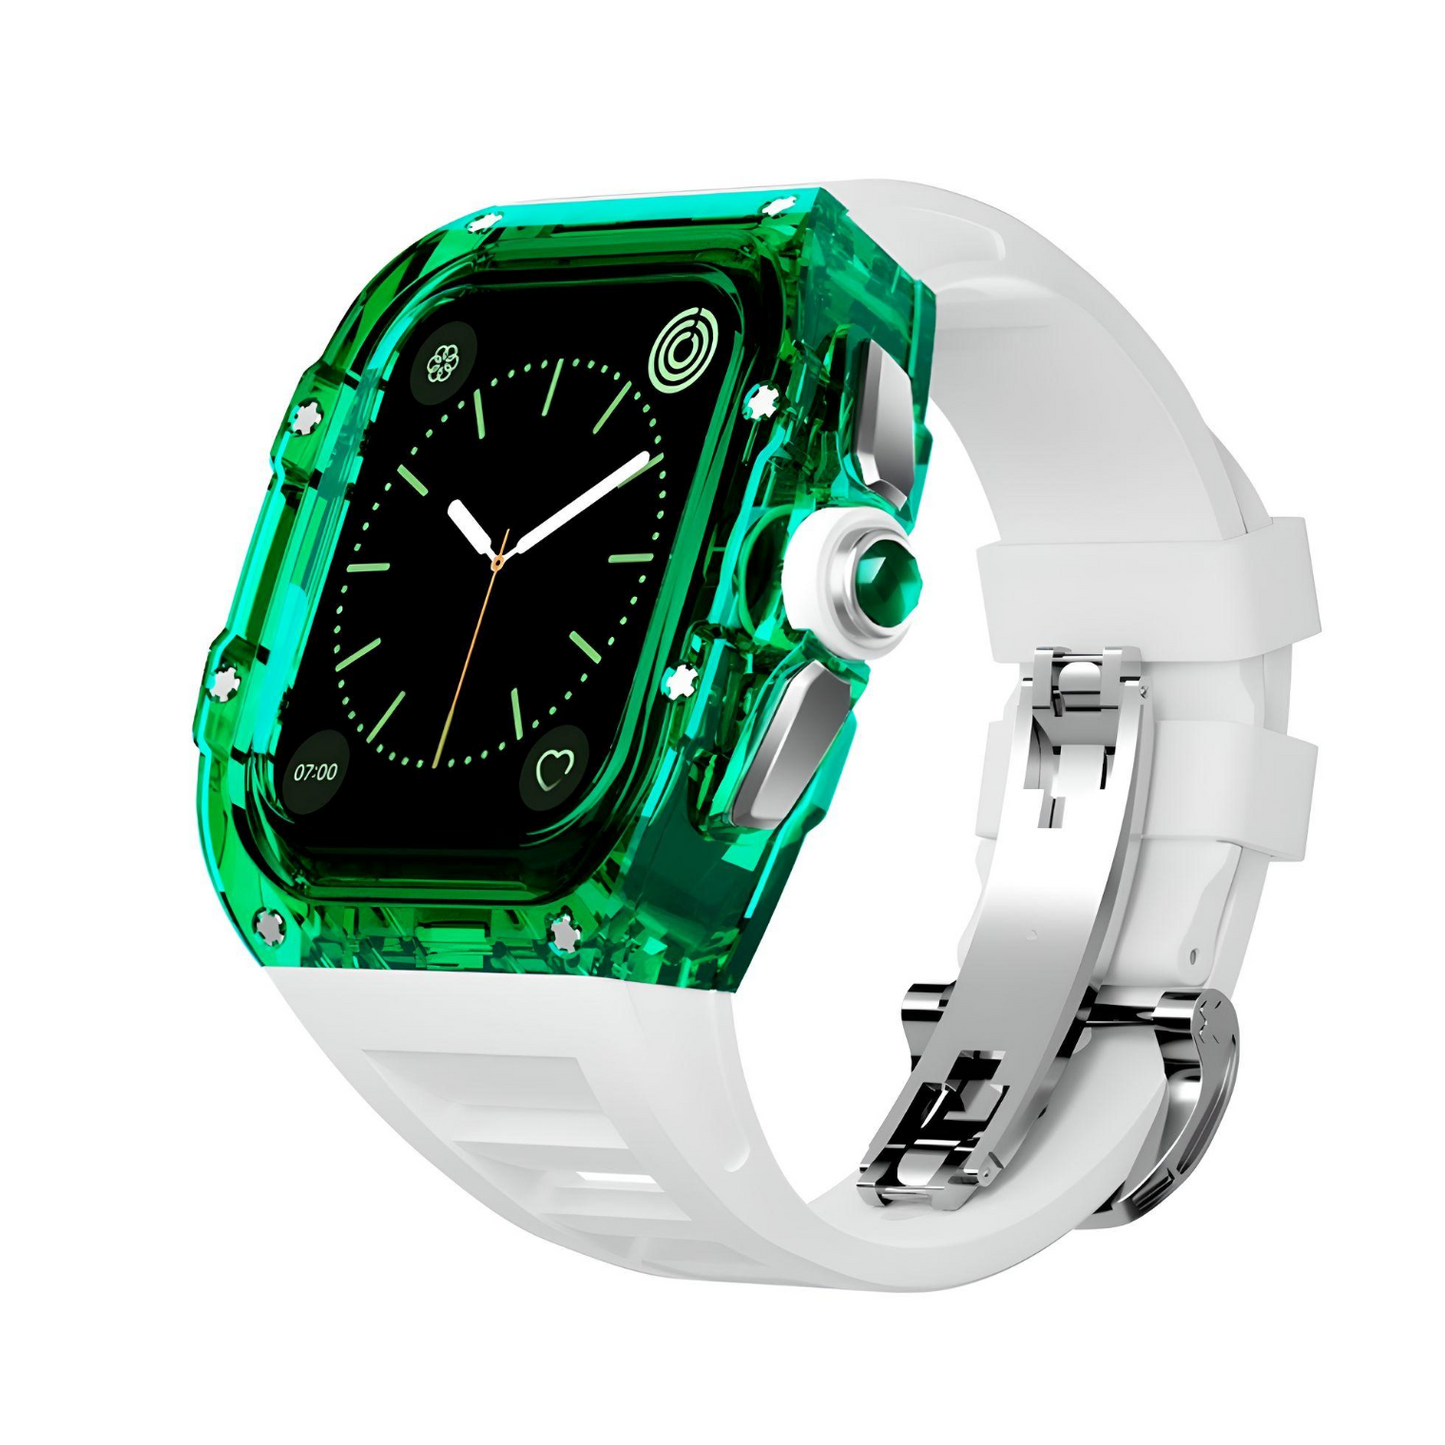 Apple Watch Aurora Crystal Case